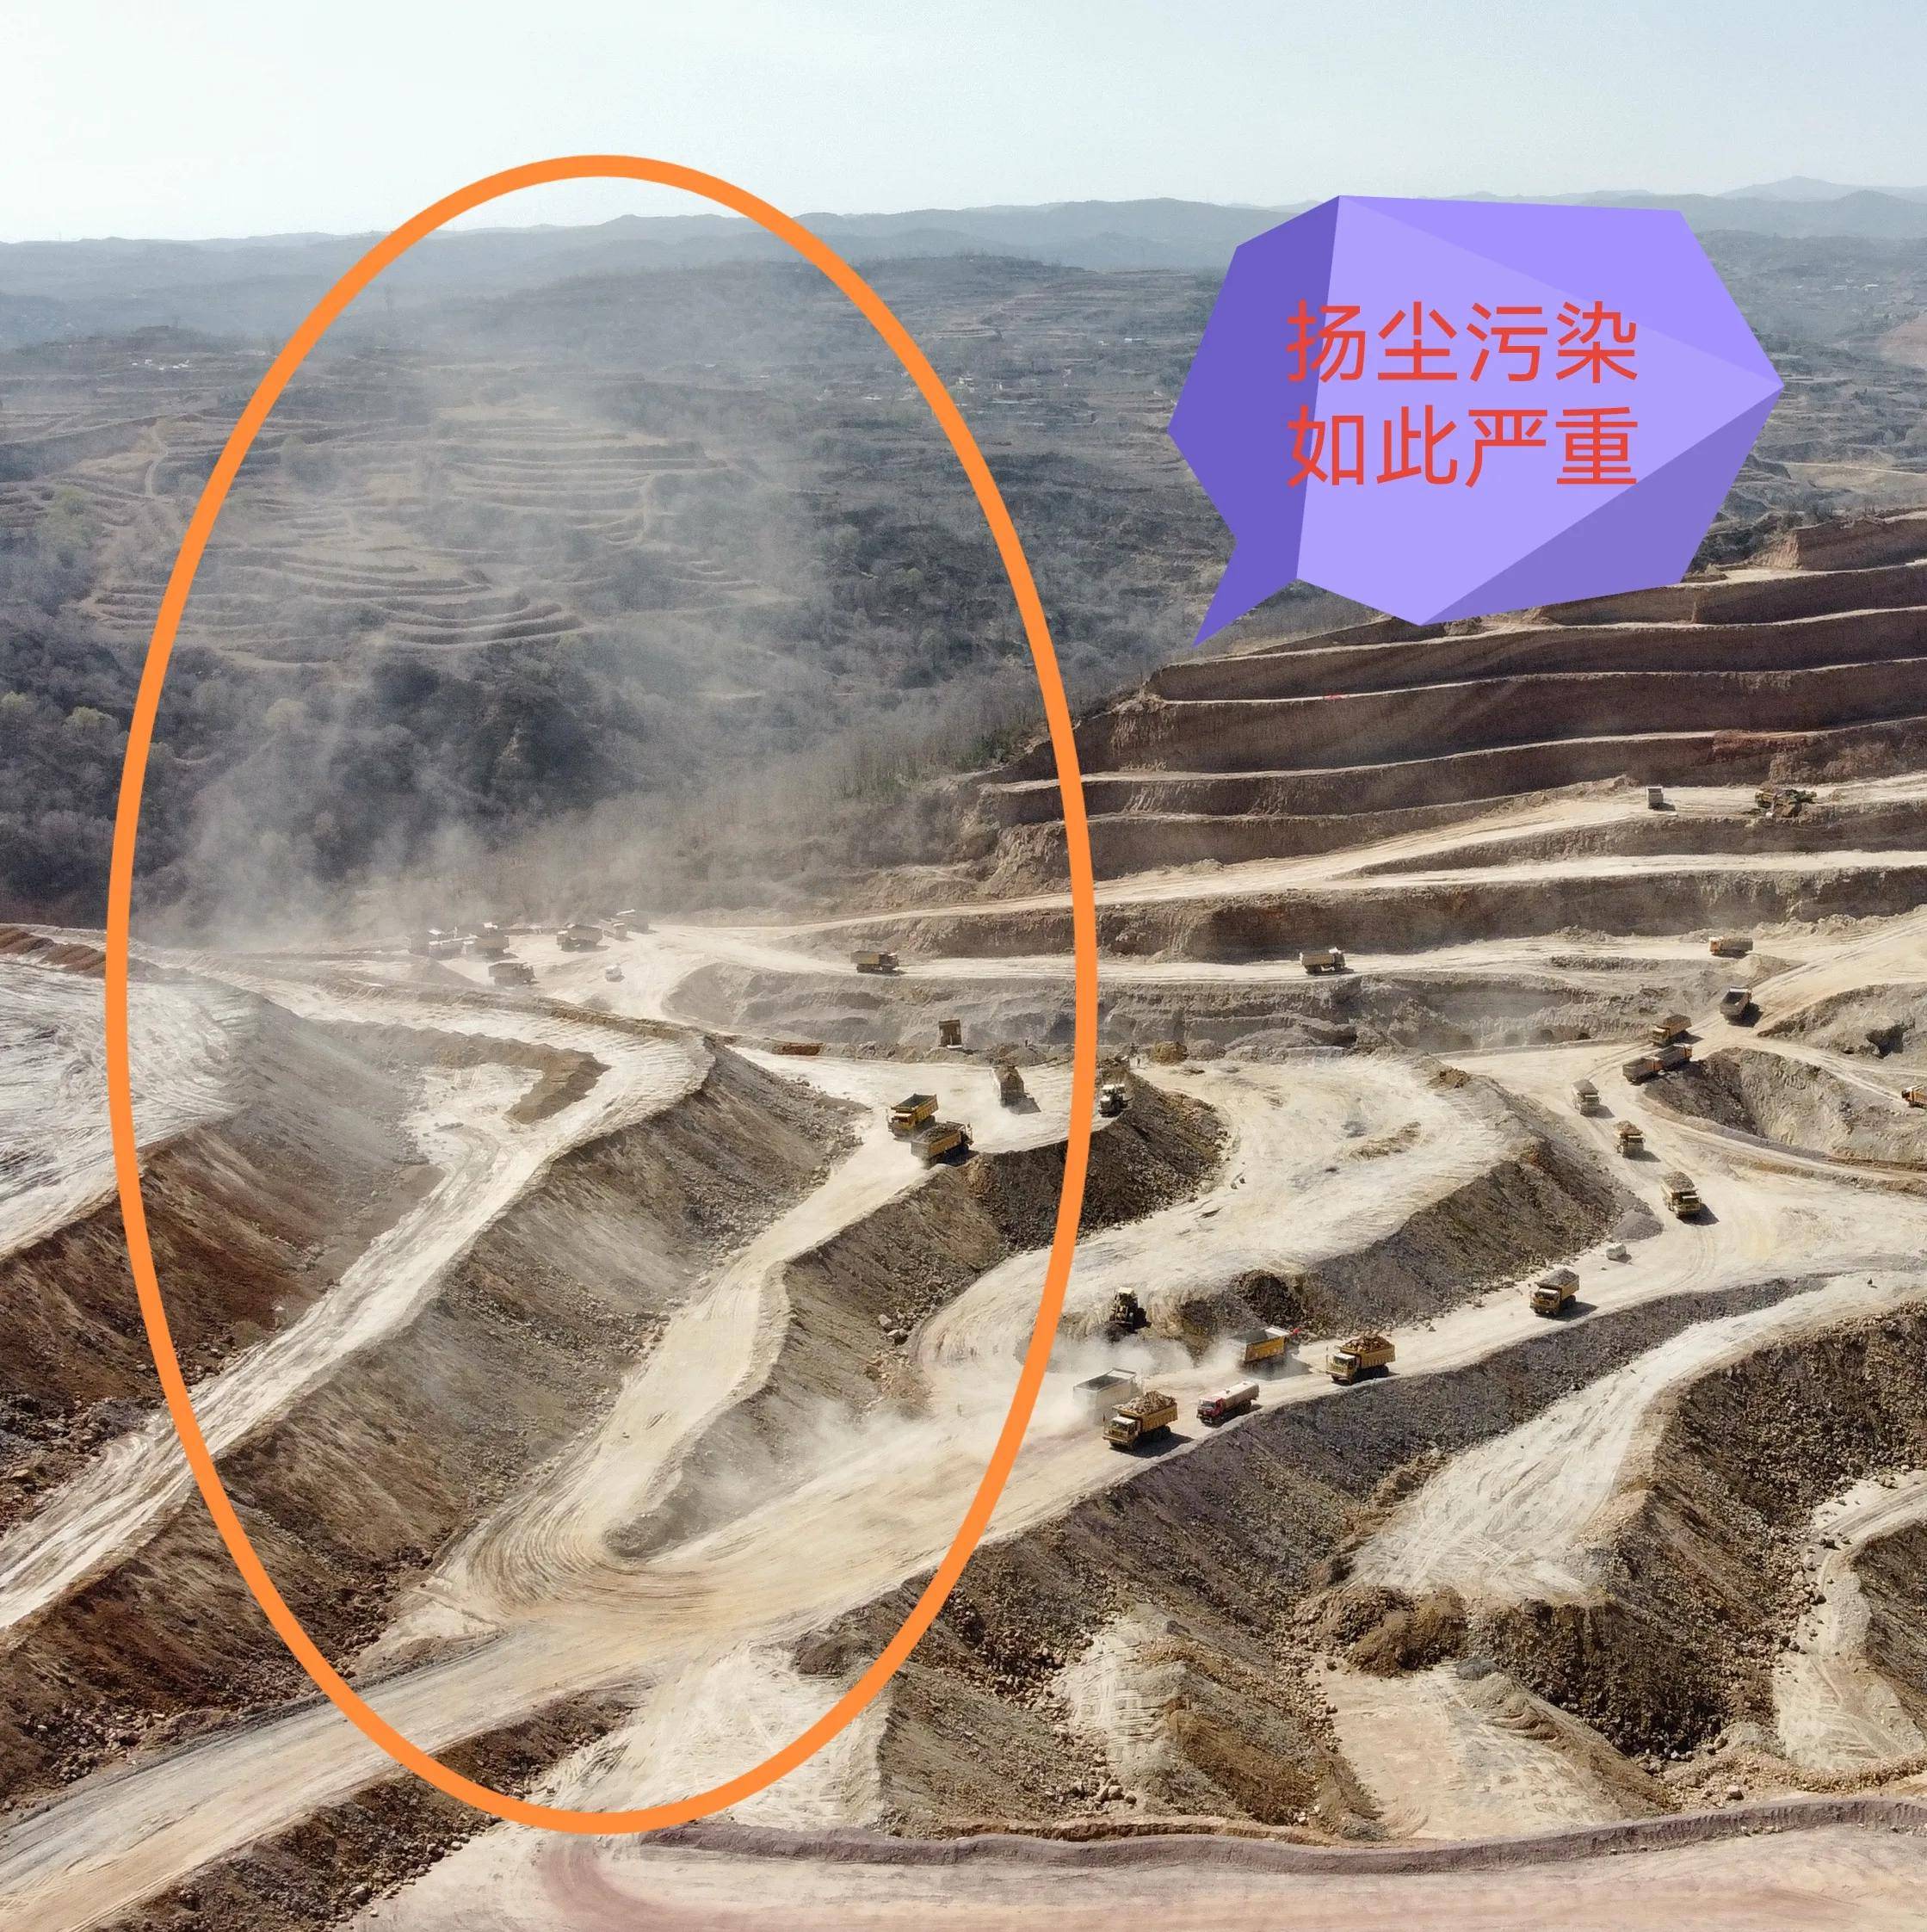 交口县桃红坡镇一大型铝矿污染如此壮观,生态环境问题突出!